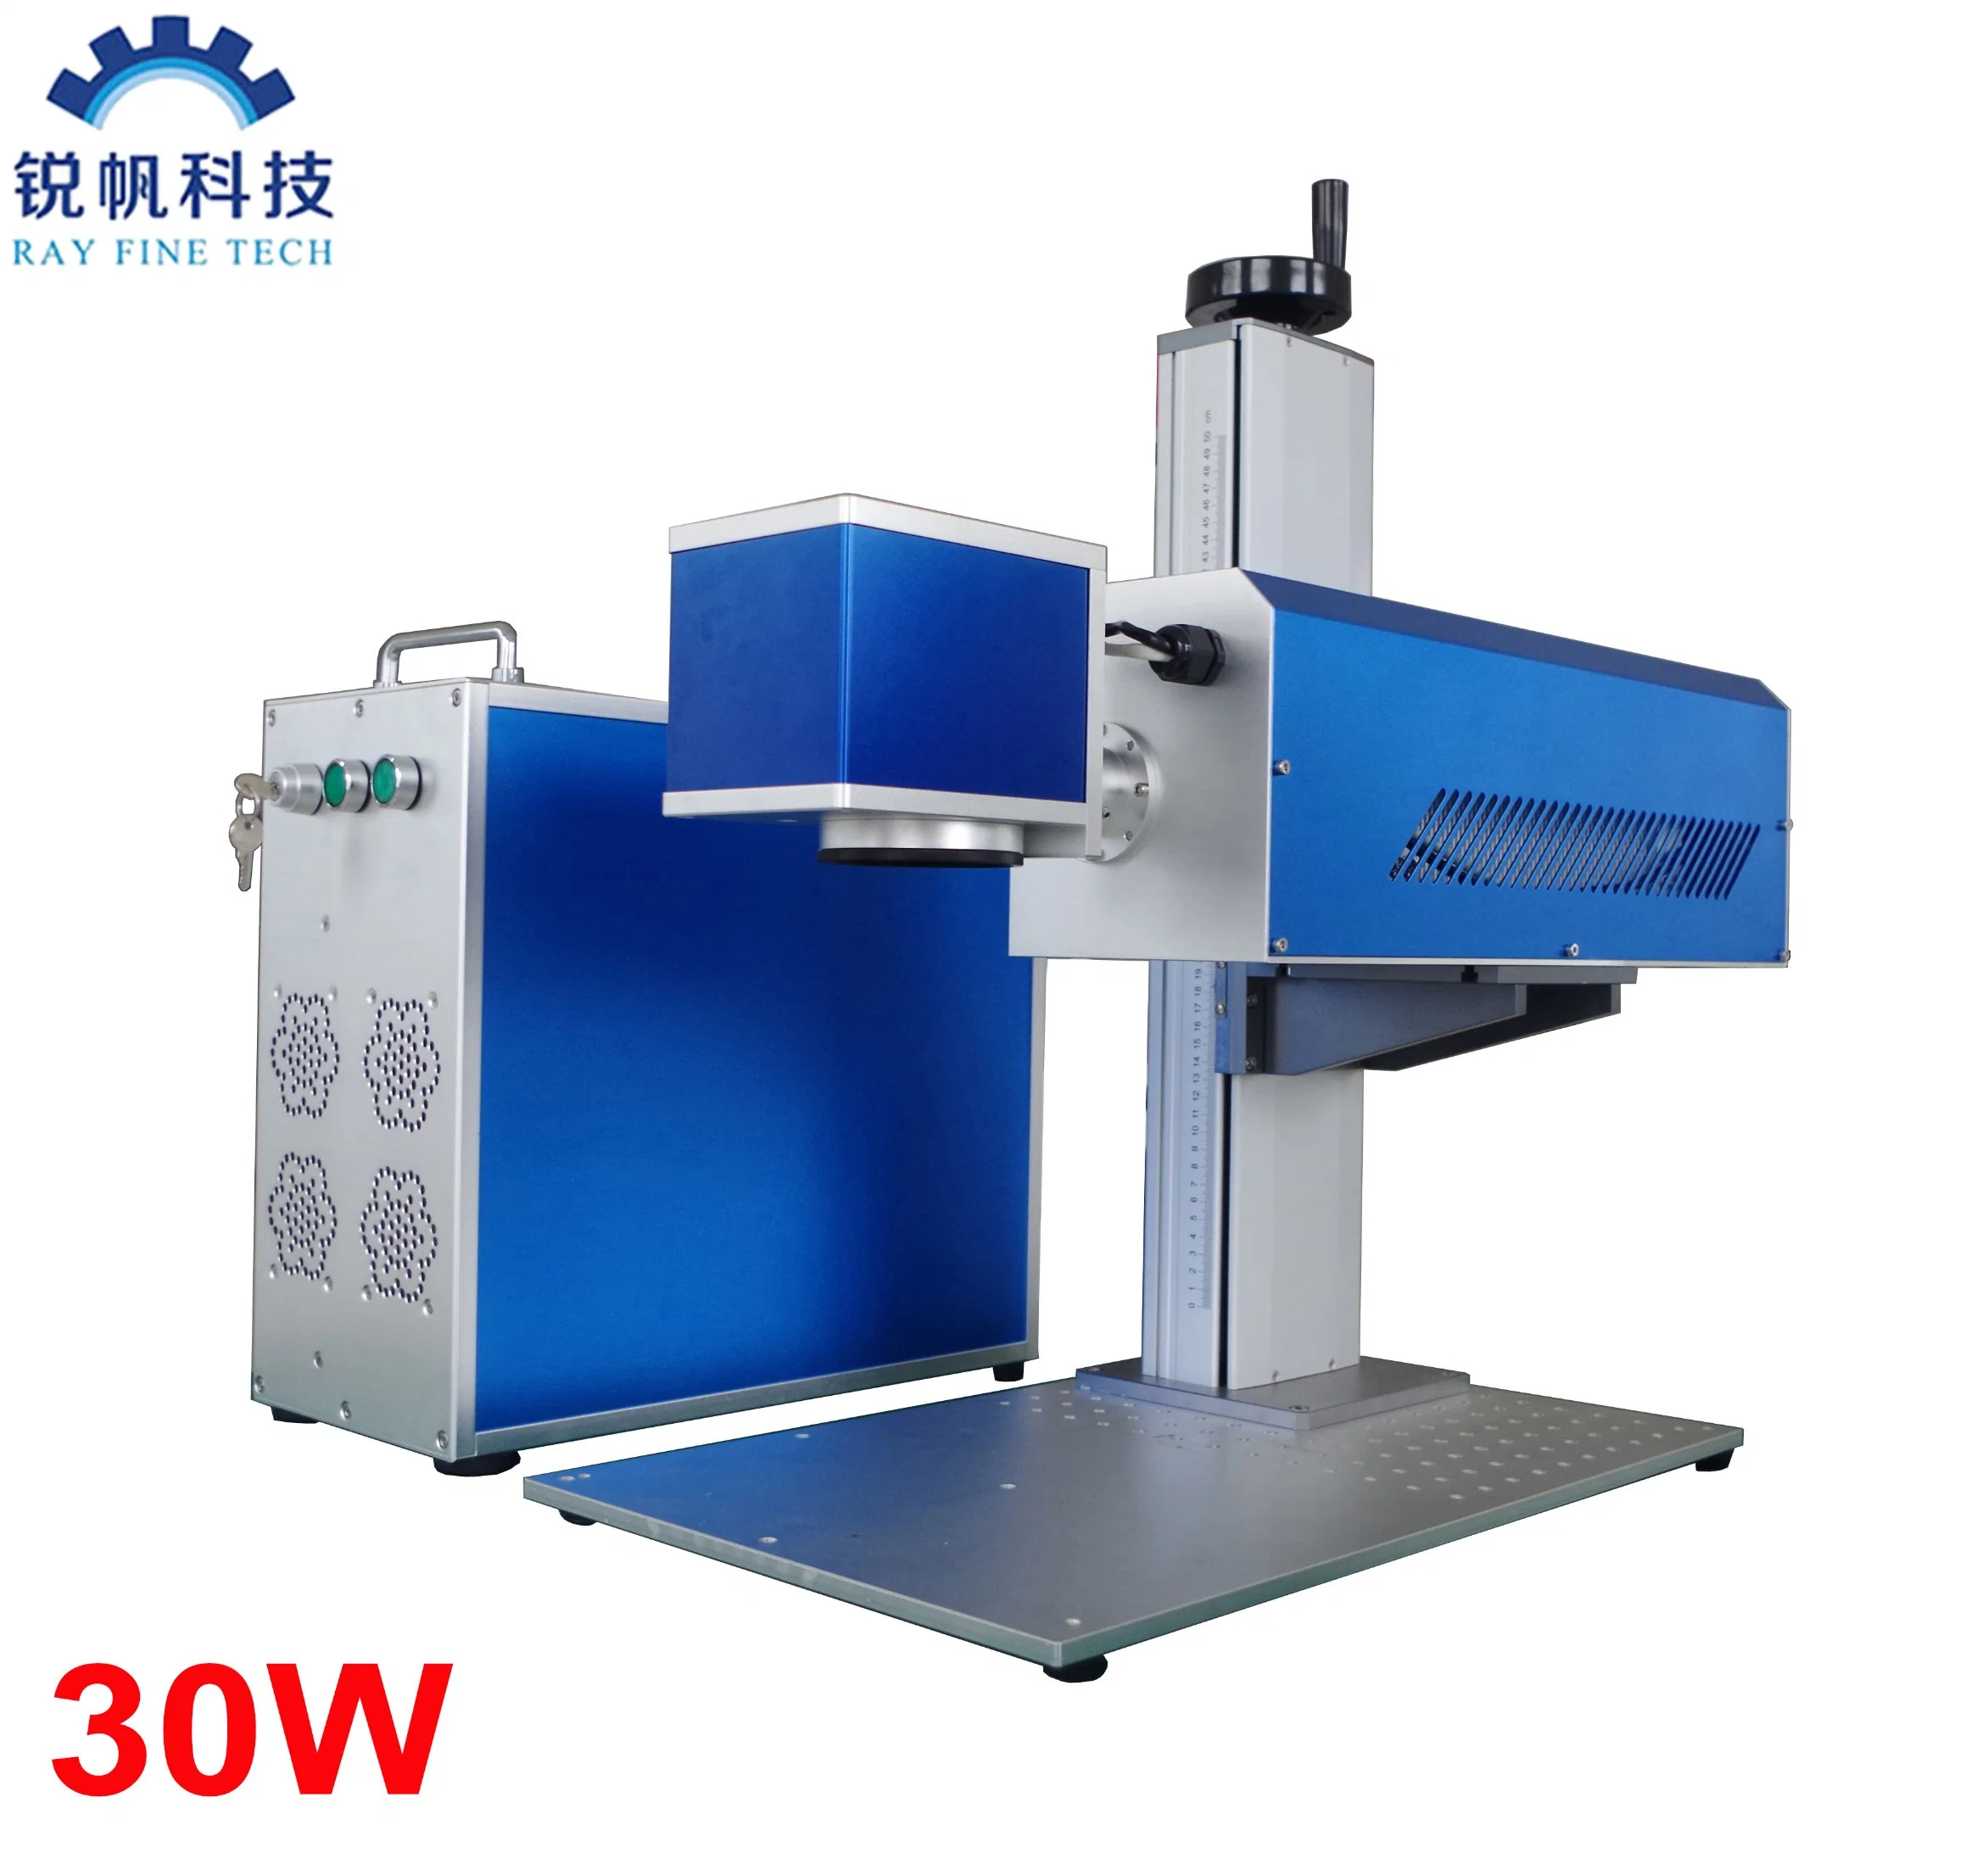 High Speed 7000mm /S CO2 Galvo Laser Marking Machine /30W Laser Marking Machine